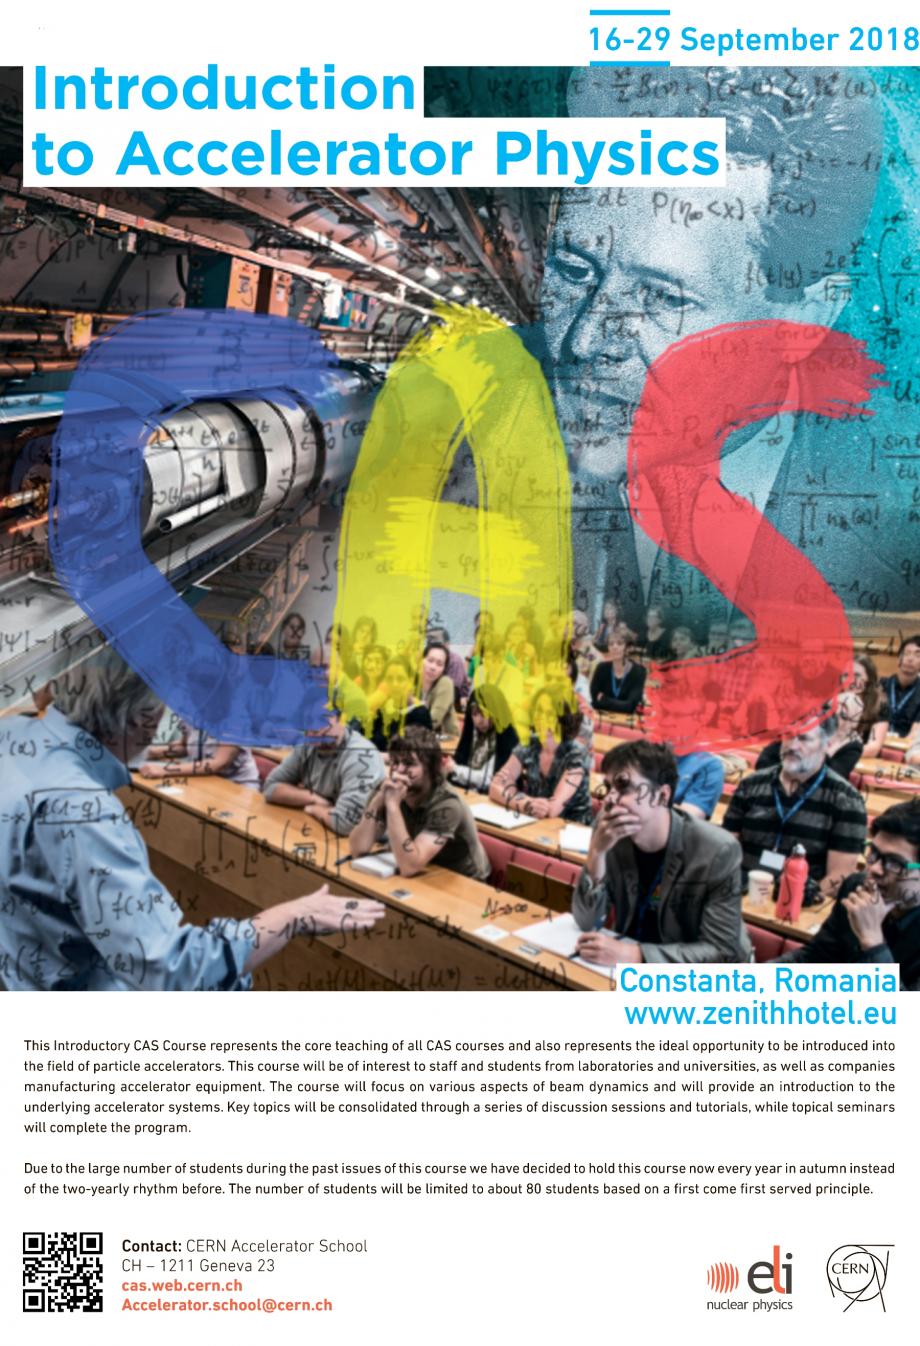 The CERN Accelerator School